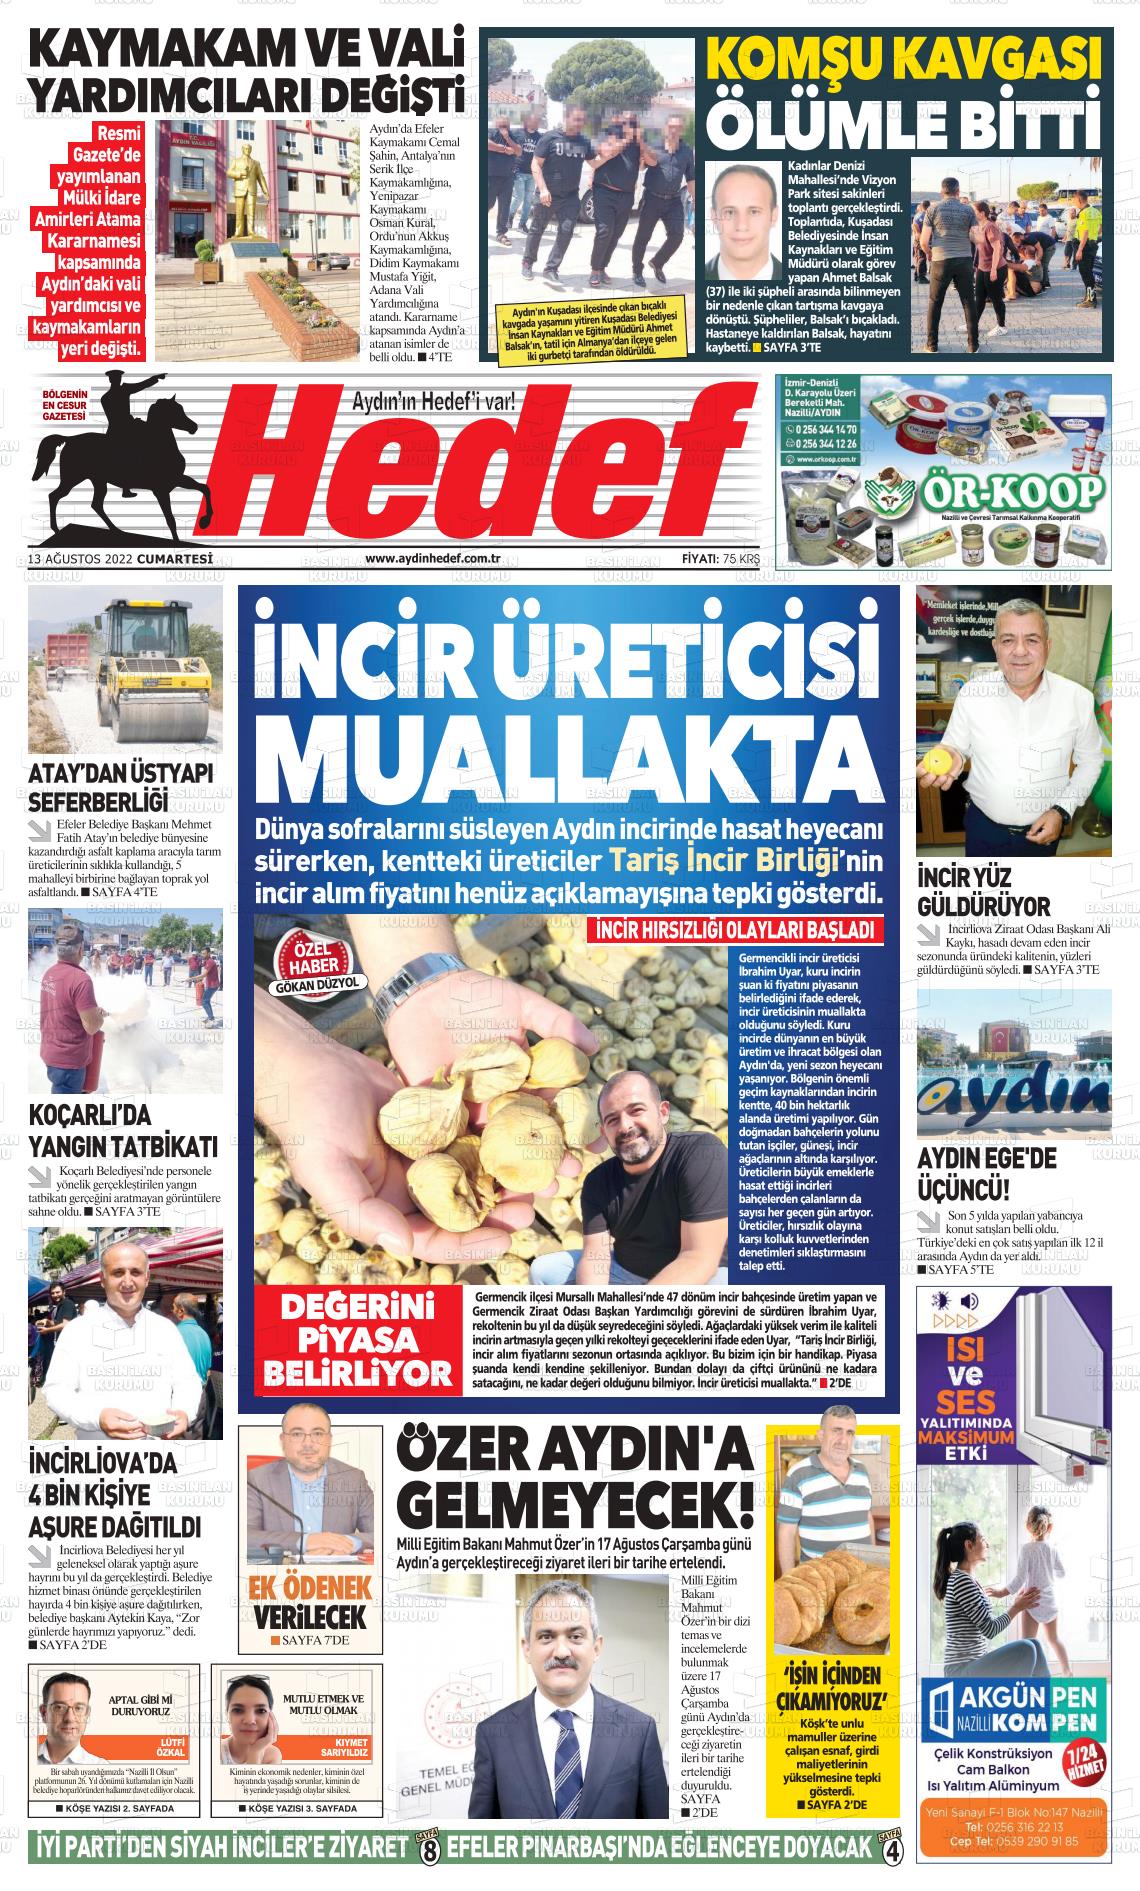 13 Ağustos 2022 Aydın Hedef Gazete Manşeti